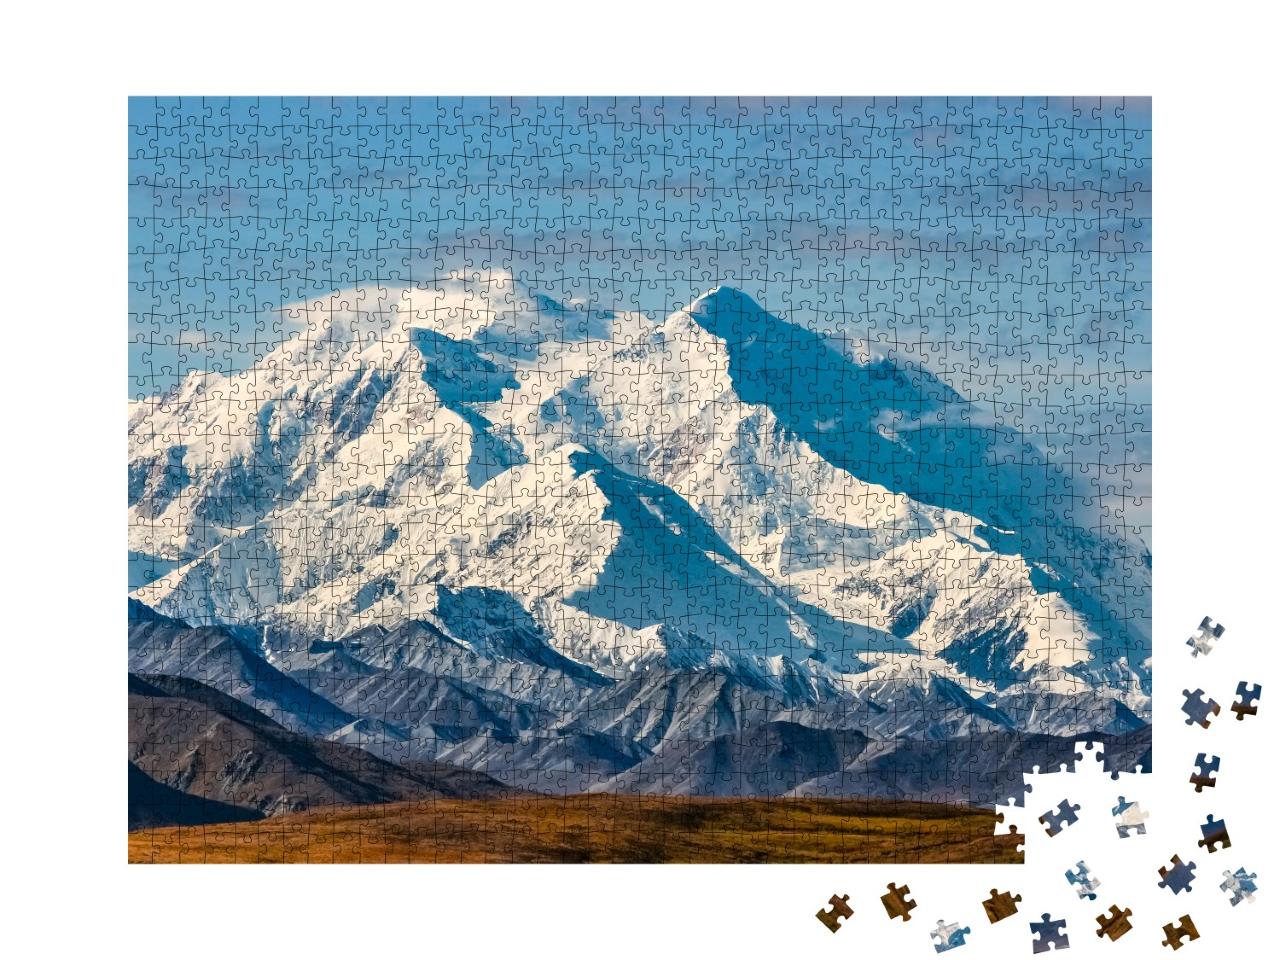 Puzzle 1000 Teile „Blick auf den majestätischen Mount McKinley, Alaska“